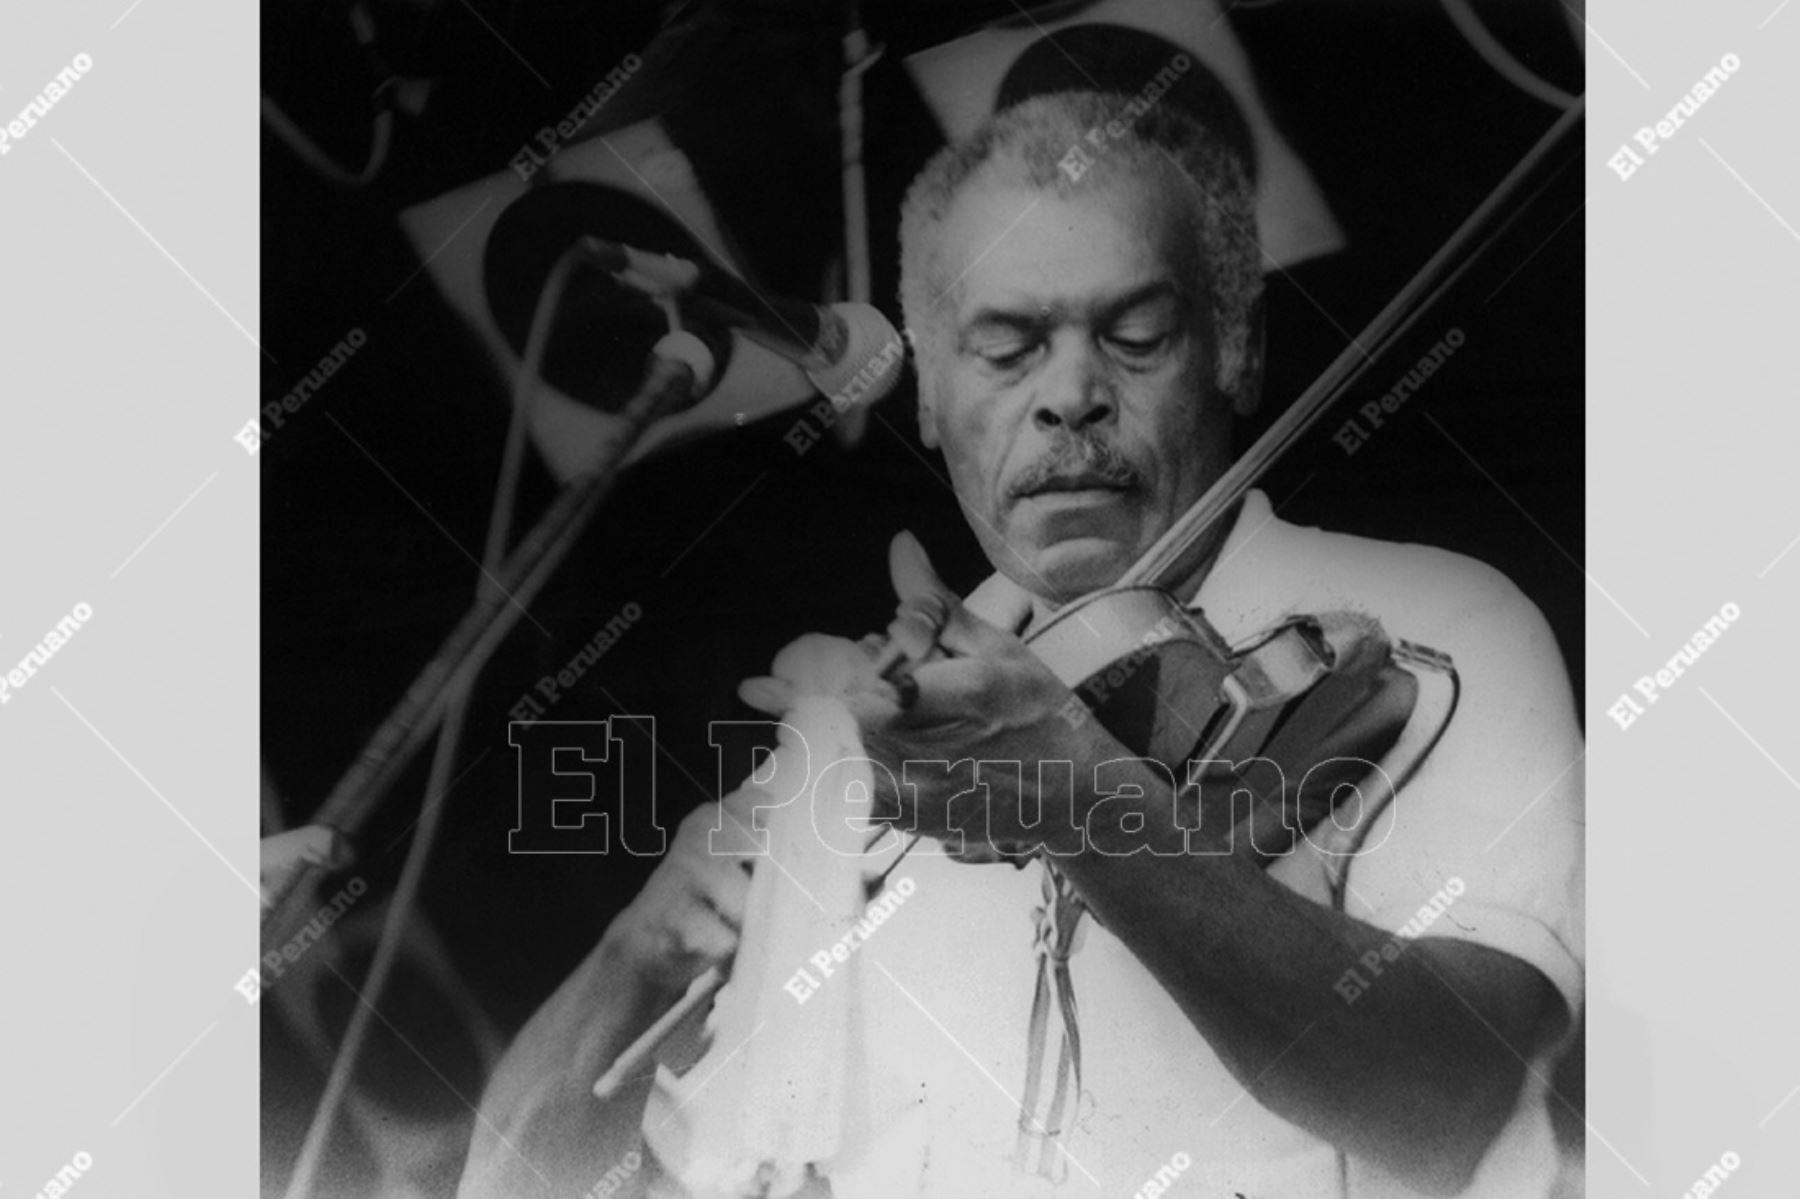 Lima - 27 enero 1993 / Amador Ballumbrosio, uno de los máximos representantes de la música y el baile afroperuanos. 
Foto: Archivo histórico de El Peruano.